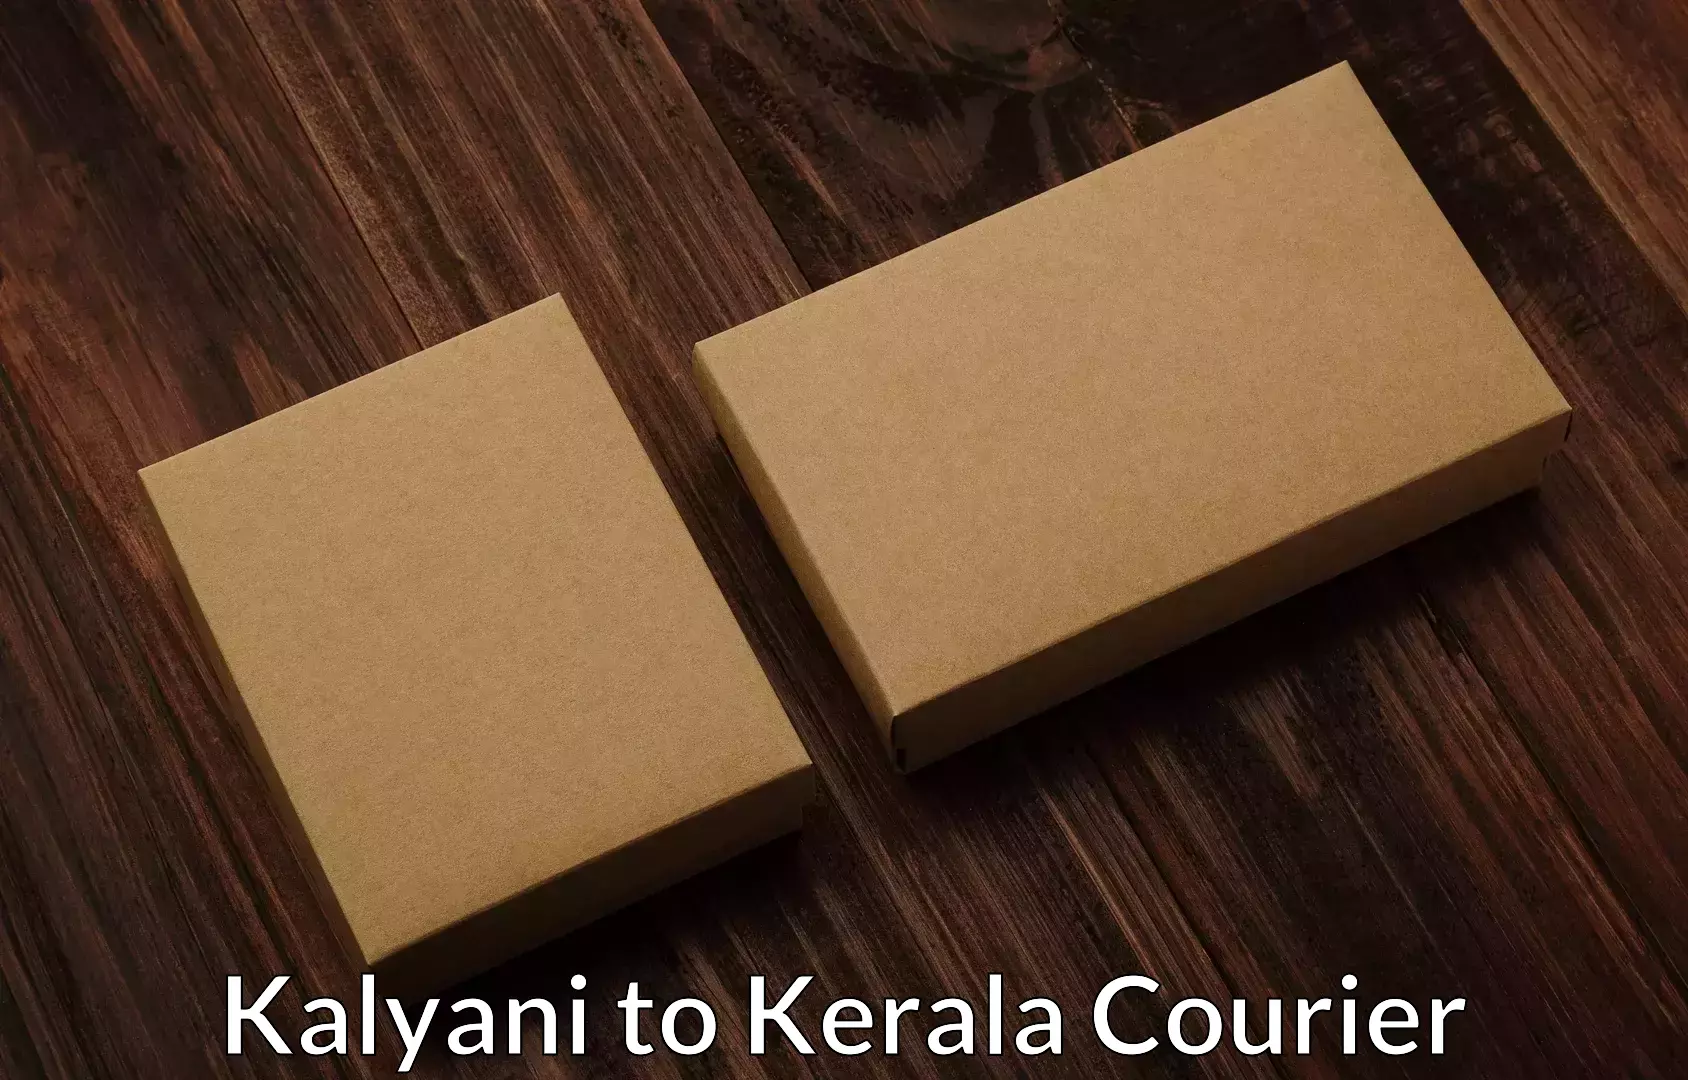 Affordable household movers Kalyani to Koothattukulam